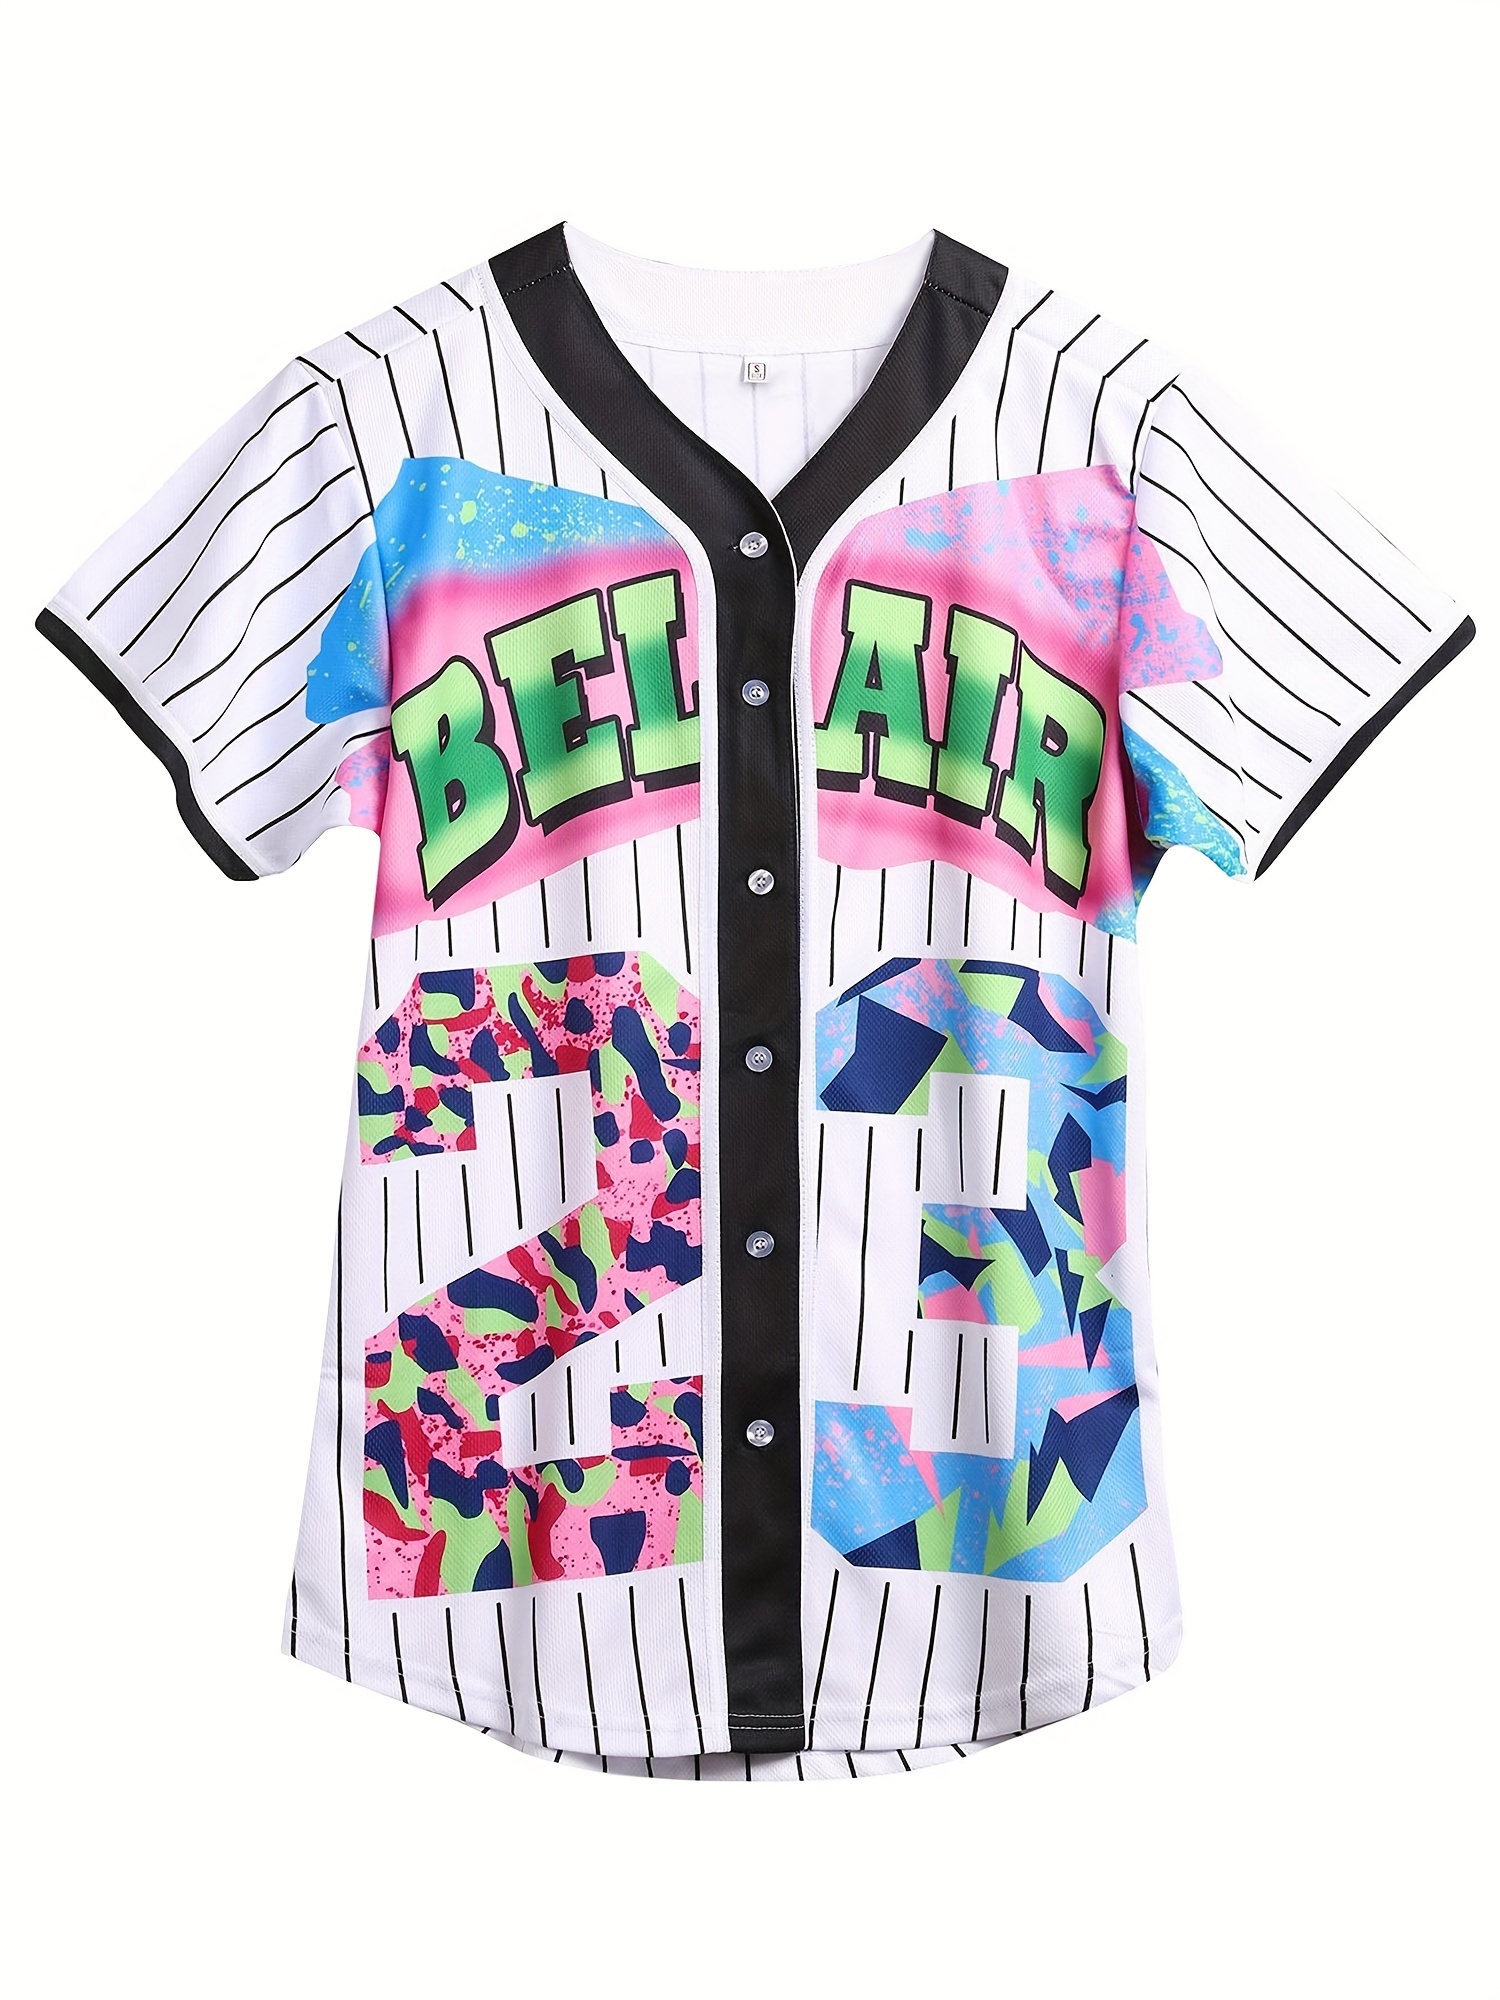  PEETITI Womens/Mens Hip Hop Baseball Jersey Outfit